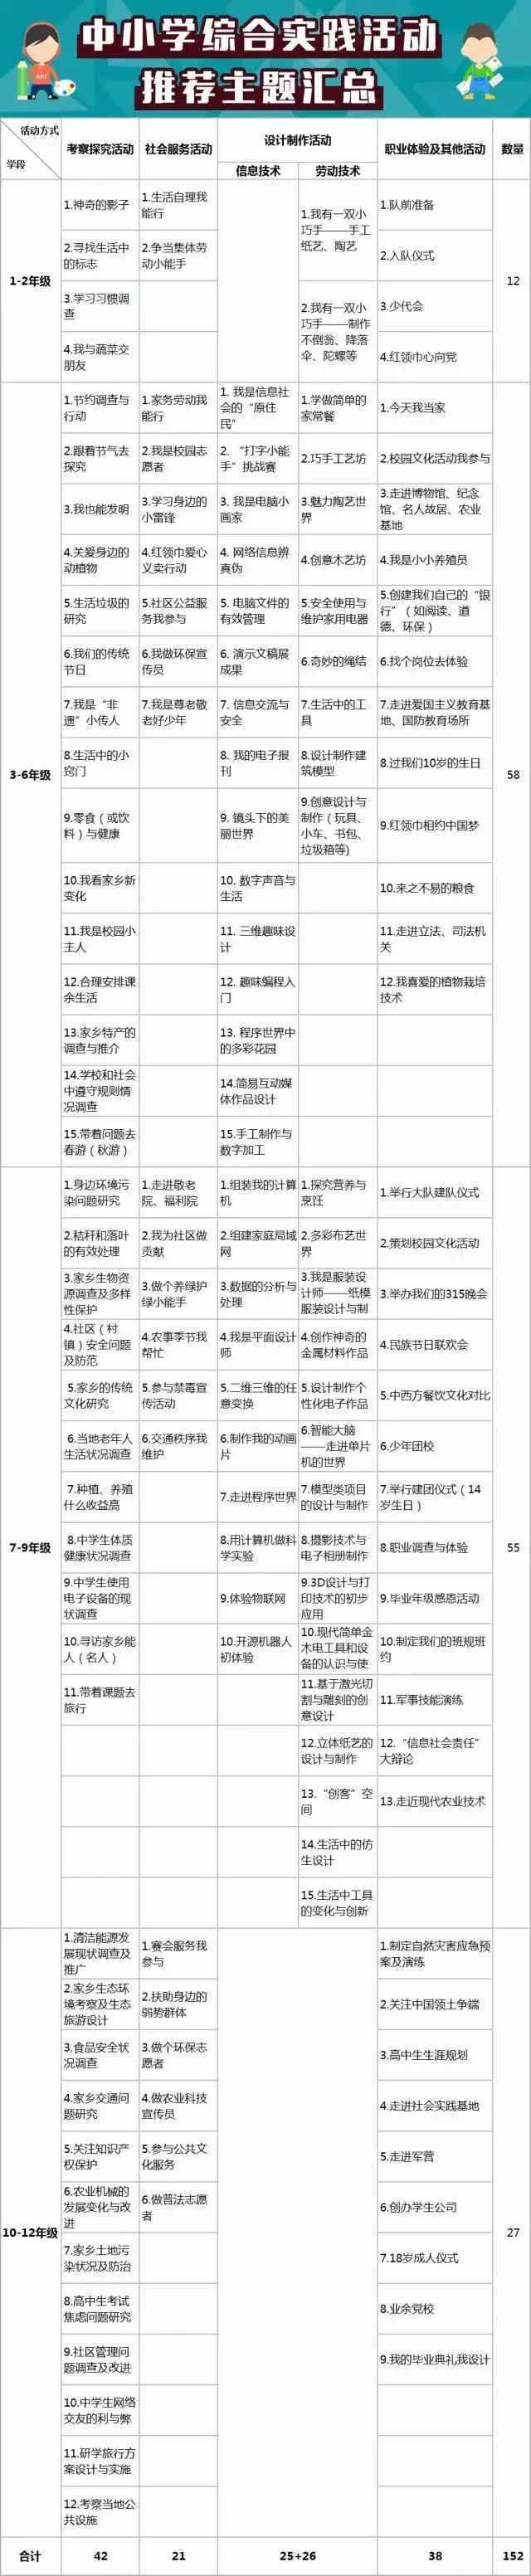 中国志愿服务网注册教程！